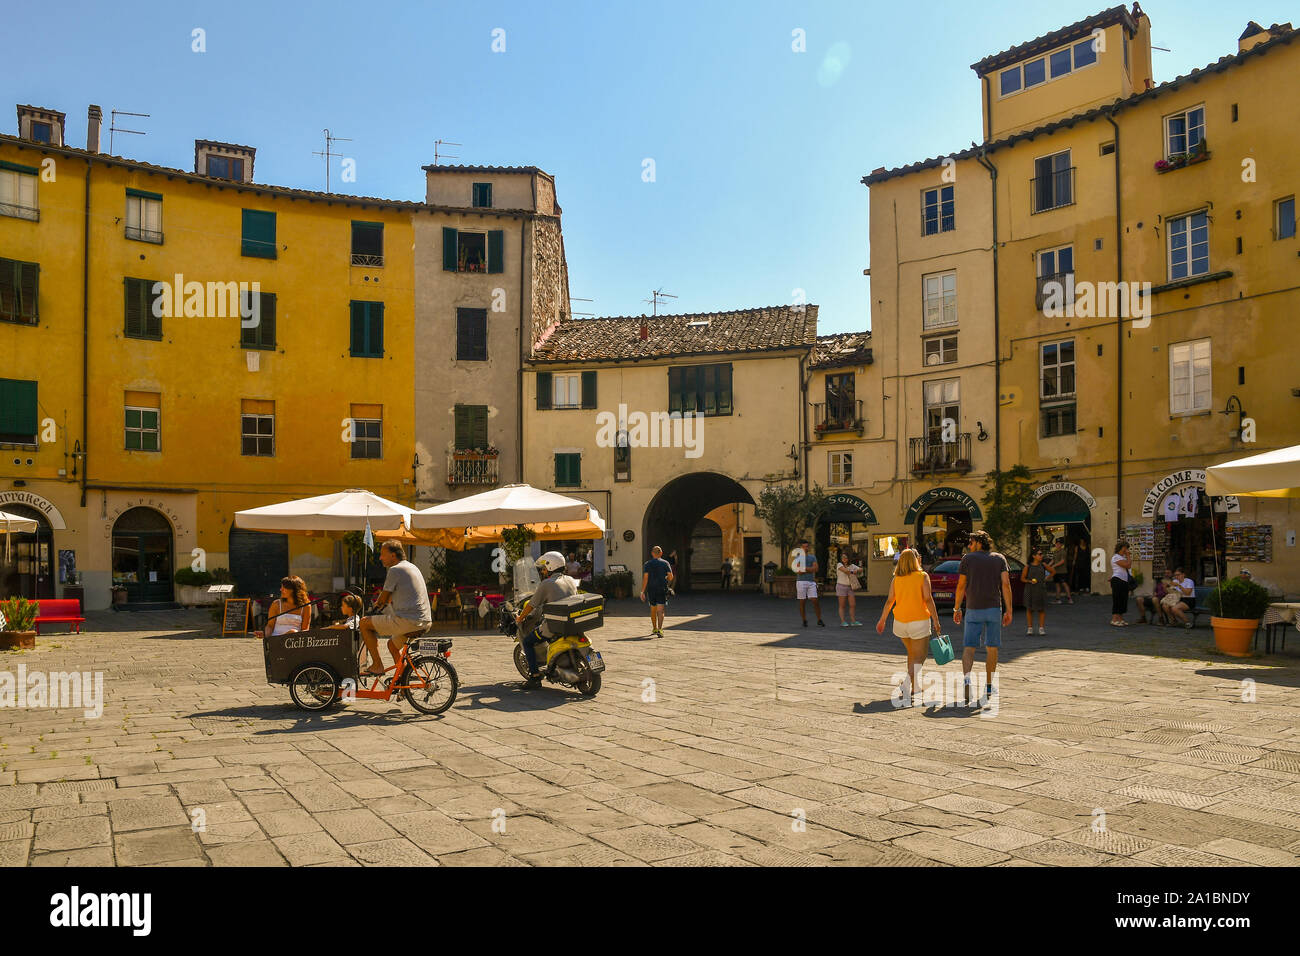 Piazza dell'Anfiteatro, una famosa piazza ellittica a Lucca, con turisti, una famiglia su un cargo bike e un postino su uno scooter, Toscana, Italia Foto Stock